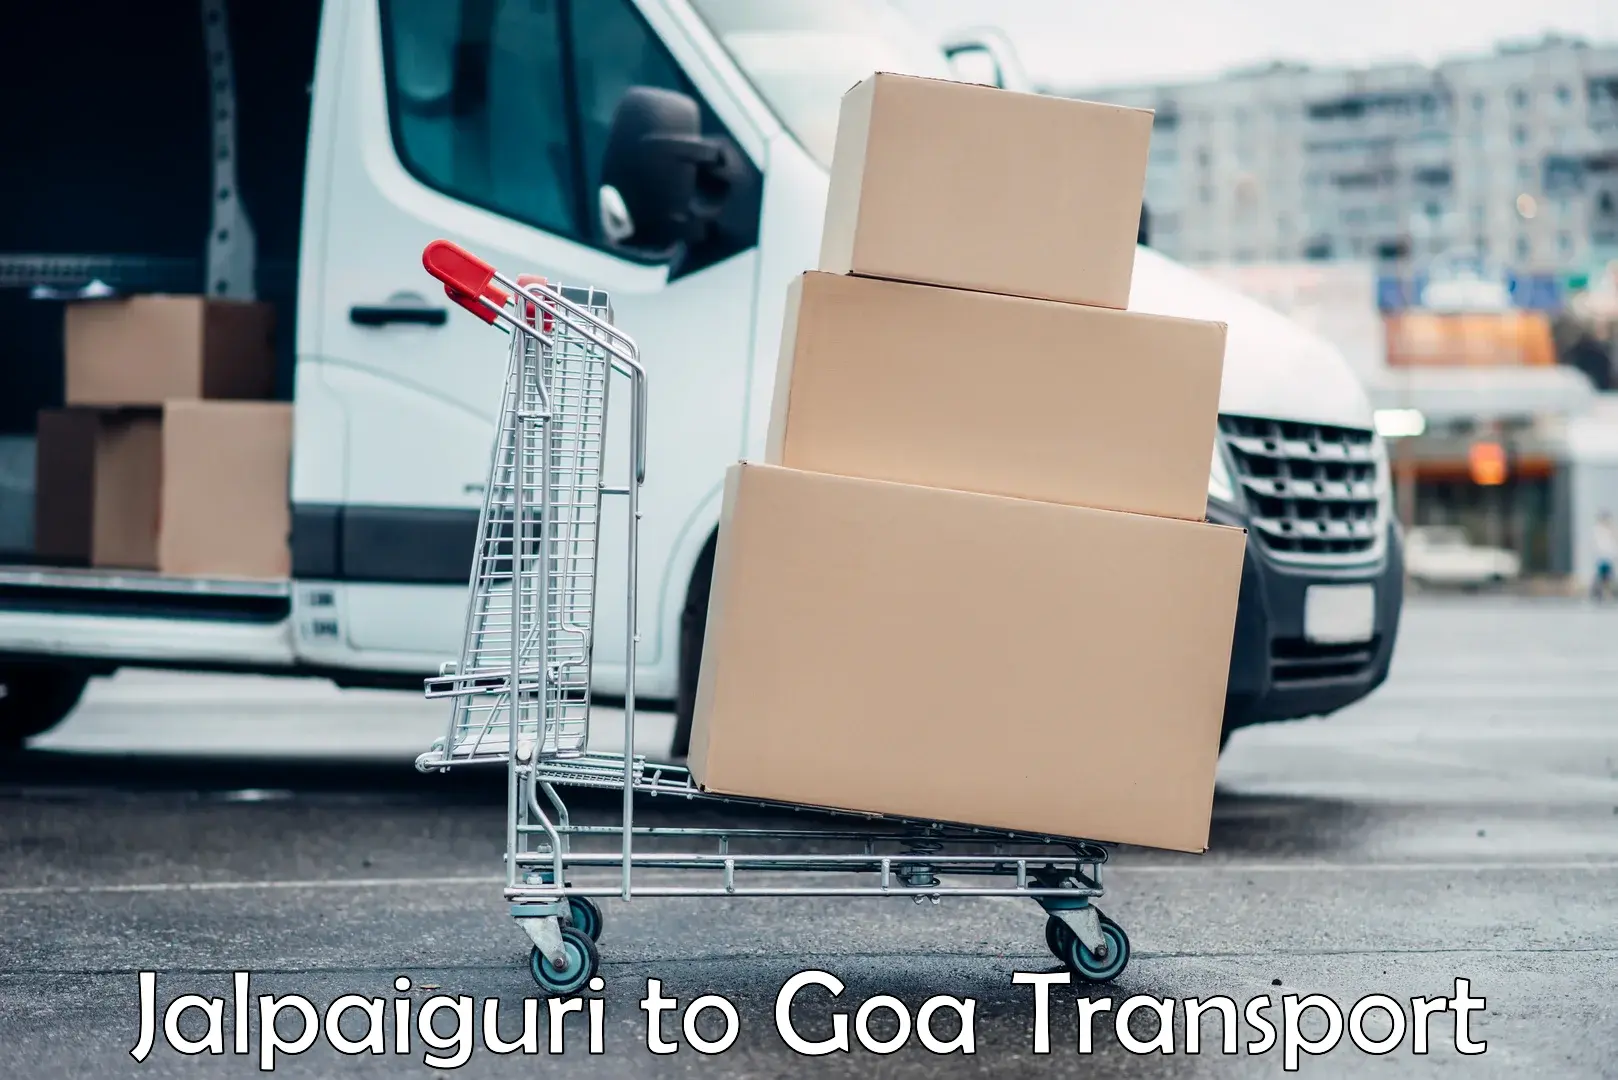 Shipping partner Jalpaiguri to IIT Goa